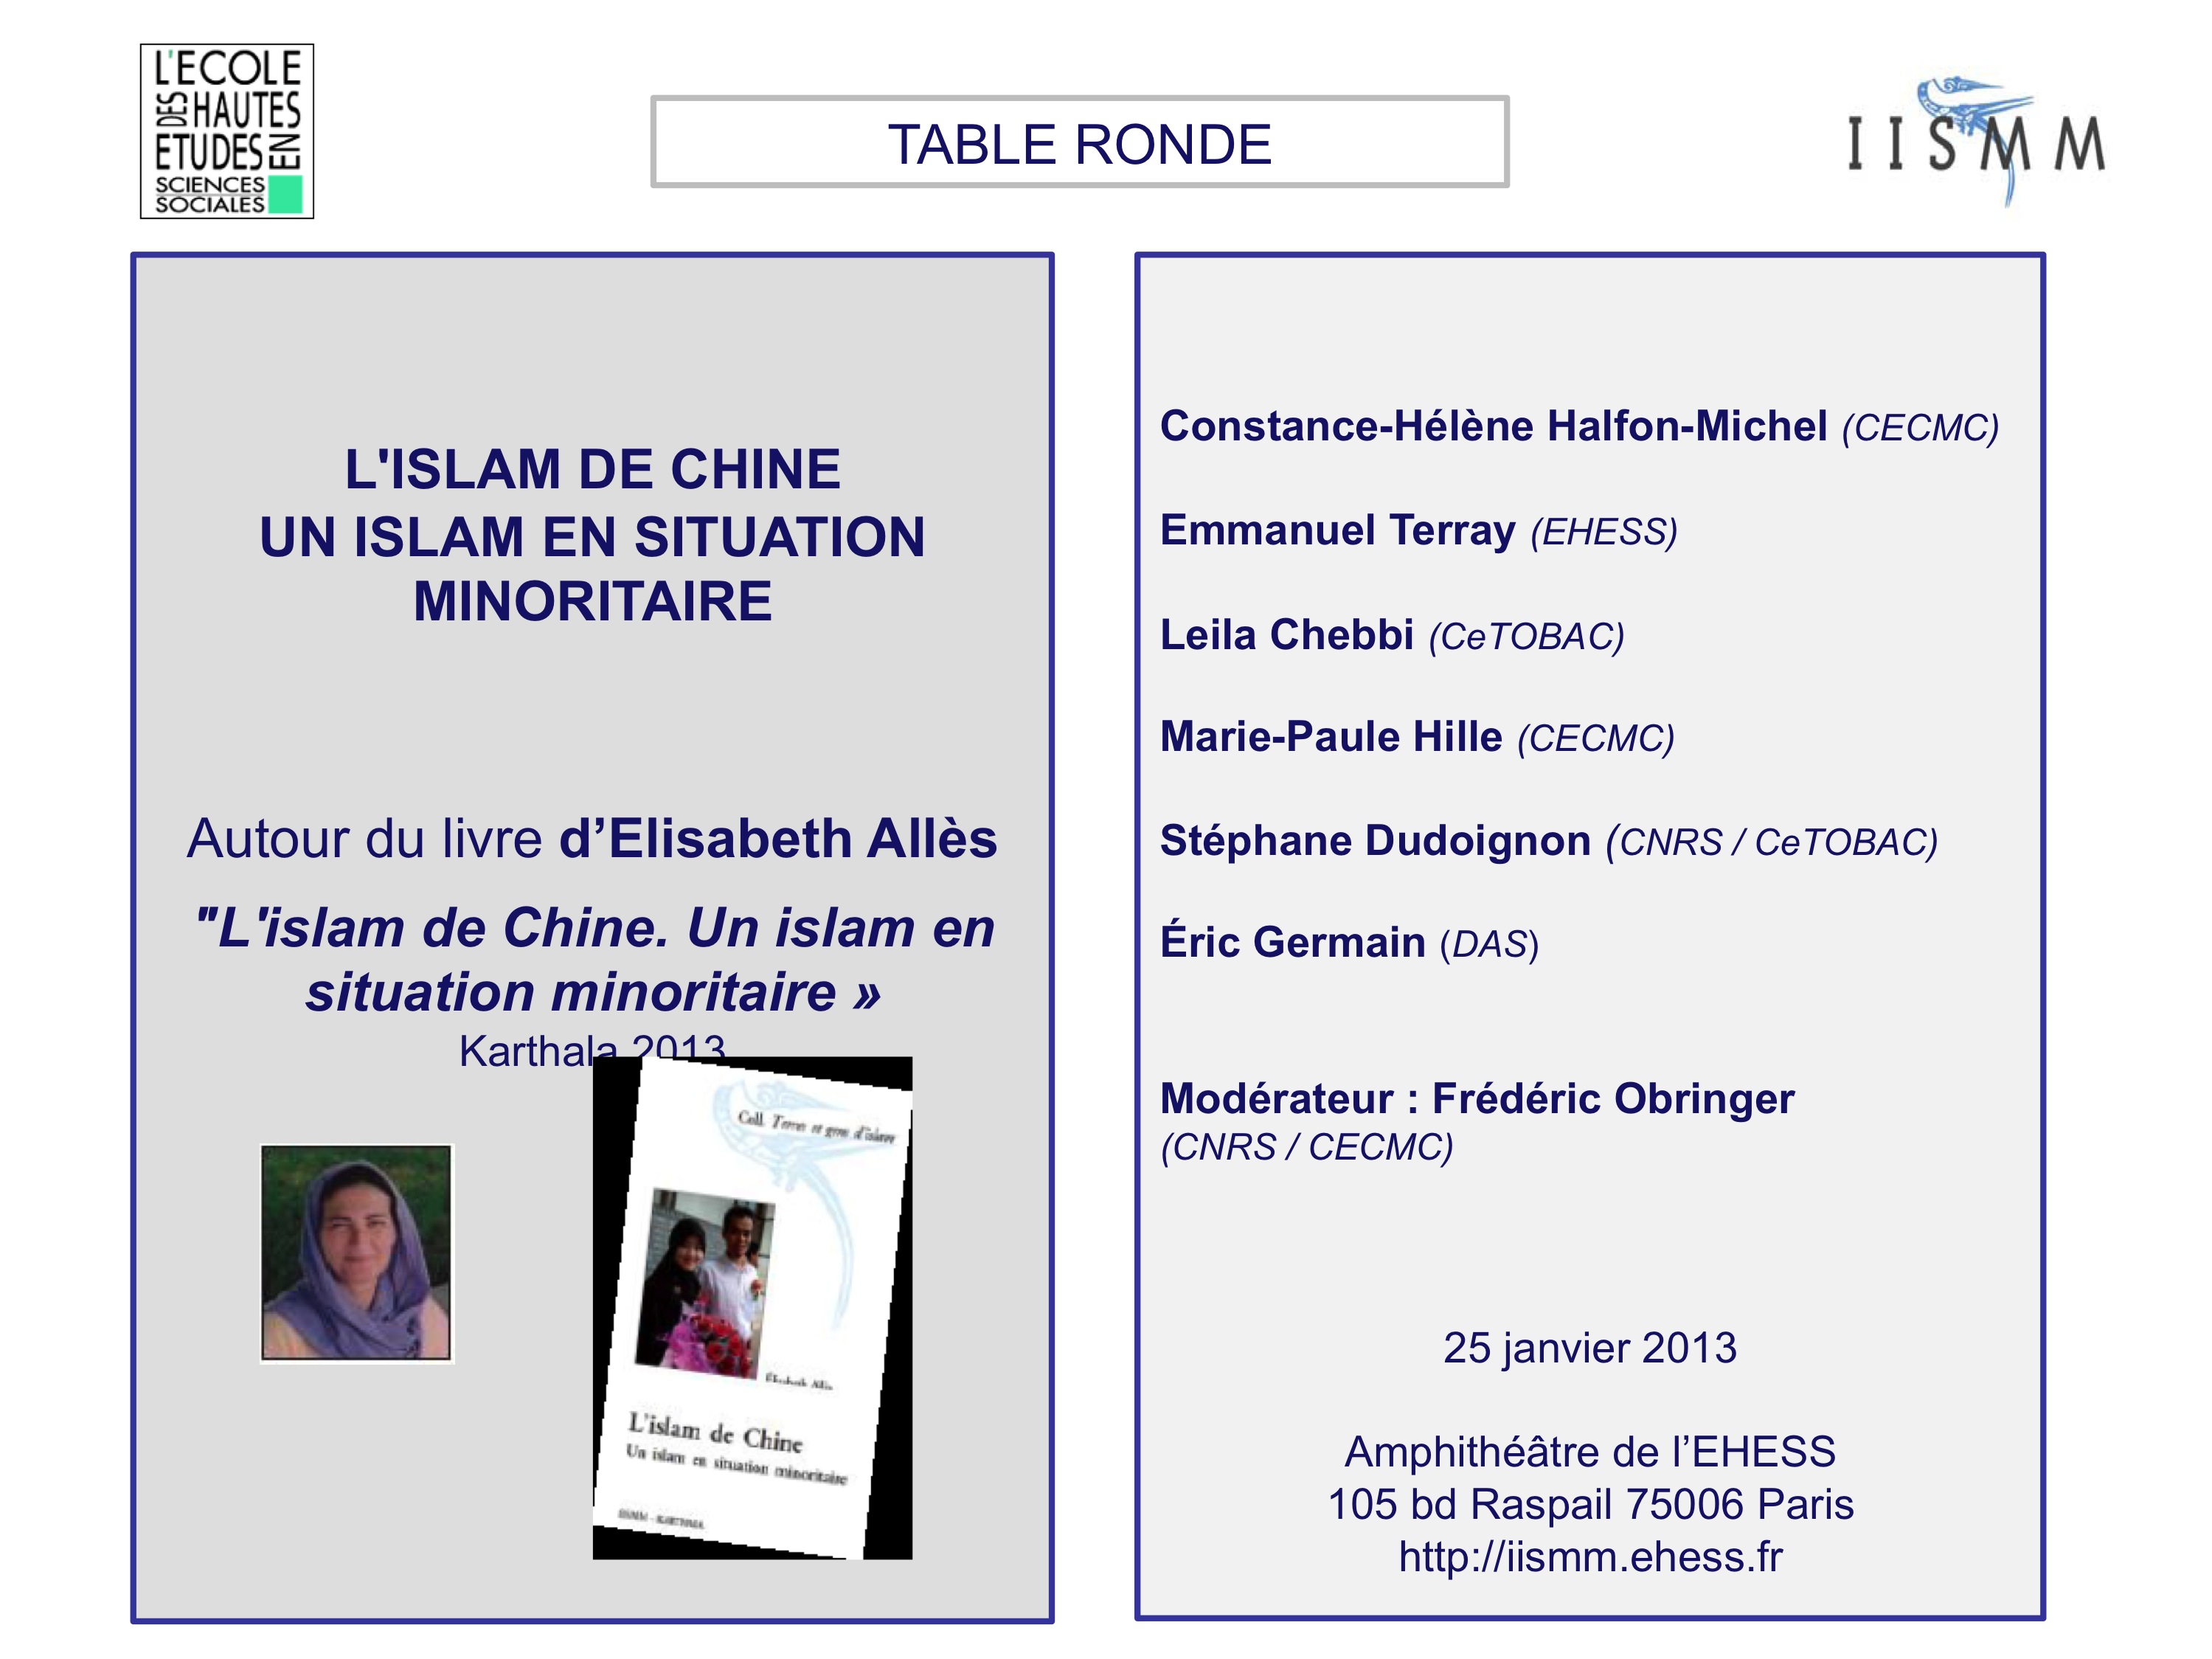 Table ronde autour du livre d'Elisabeth Allès: "L'islam en Chine: un Islam en situation minoritaire"